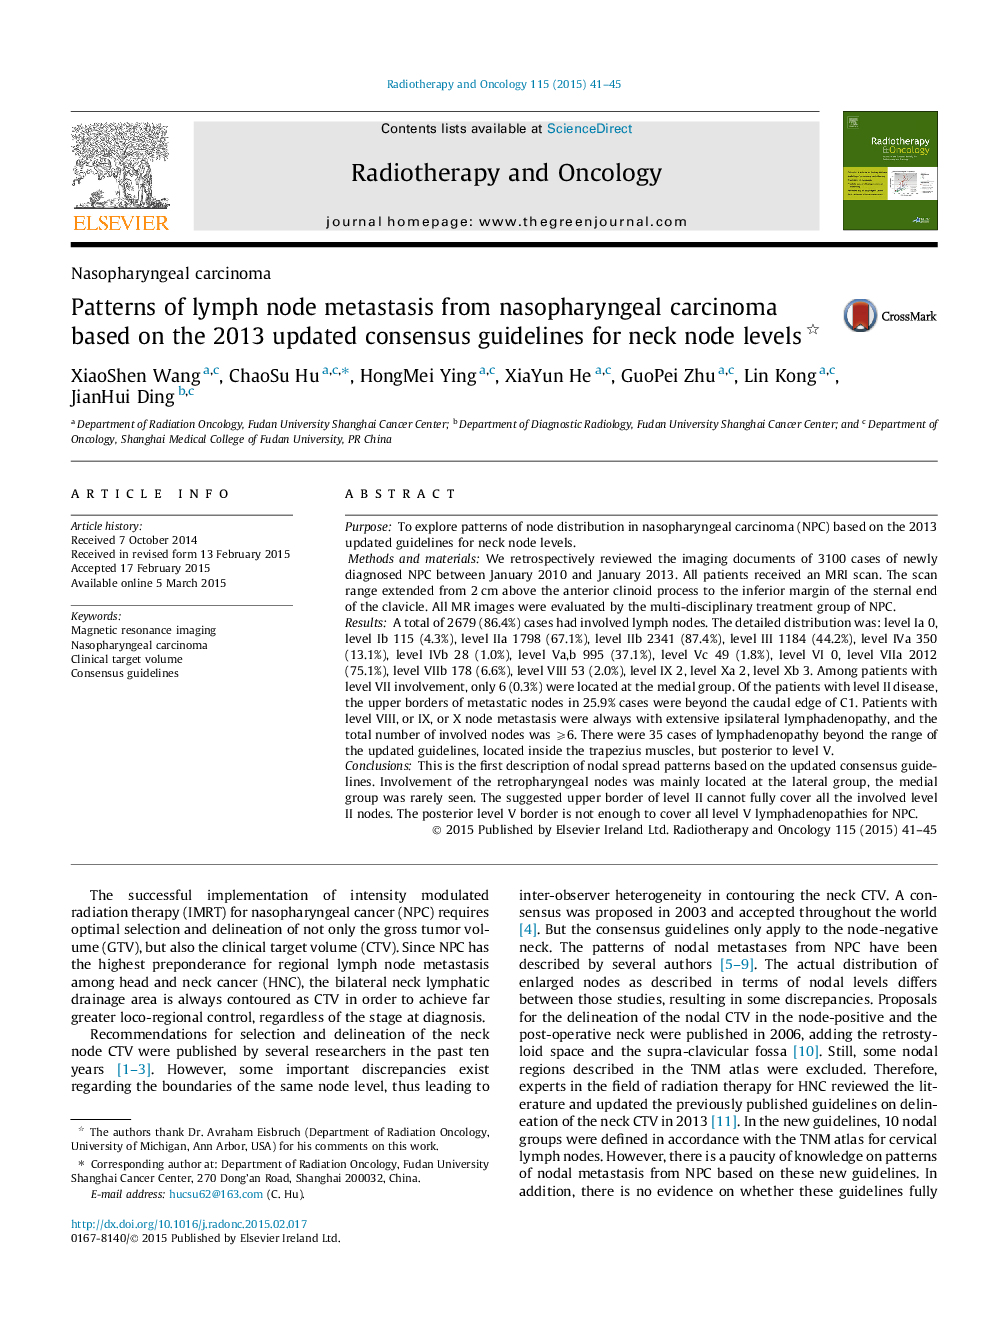 الگوهای متاستاز غدد لنفاوی ناشی از کارسینوم نازوفارنکس براساس دستورالعمل اجماع بر پایه 2013 برای سطح گره گردن 